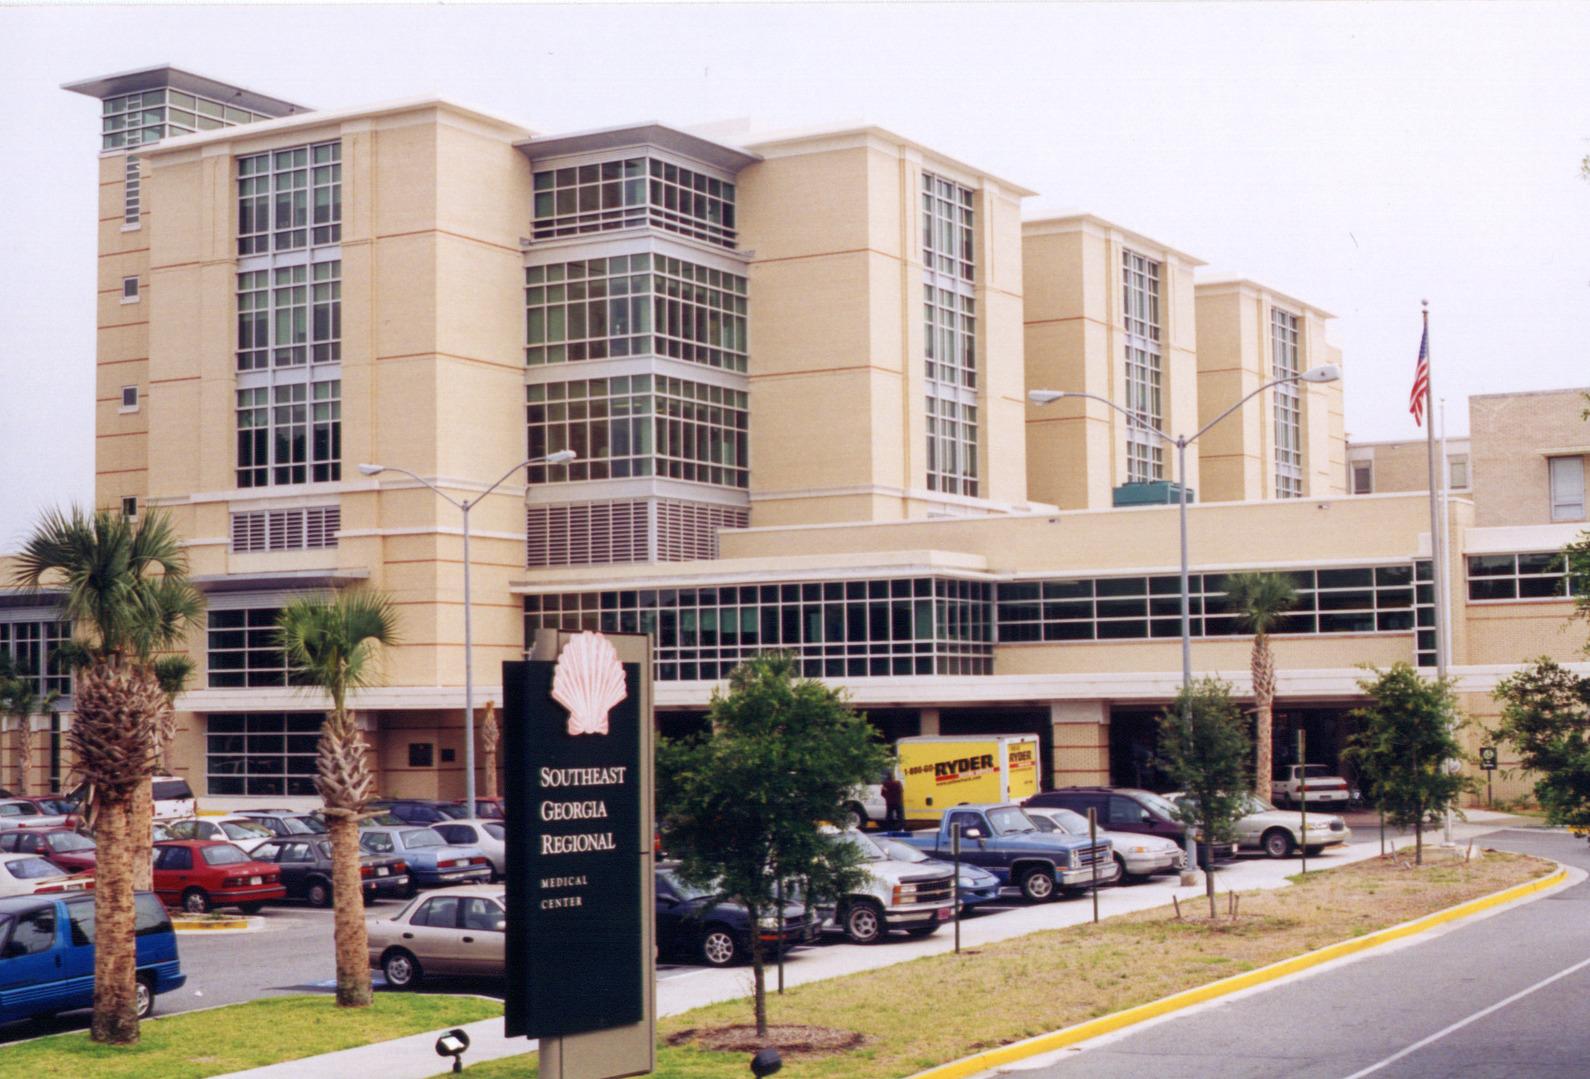 Southeast Georgia Regional Medical Center